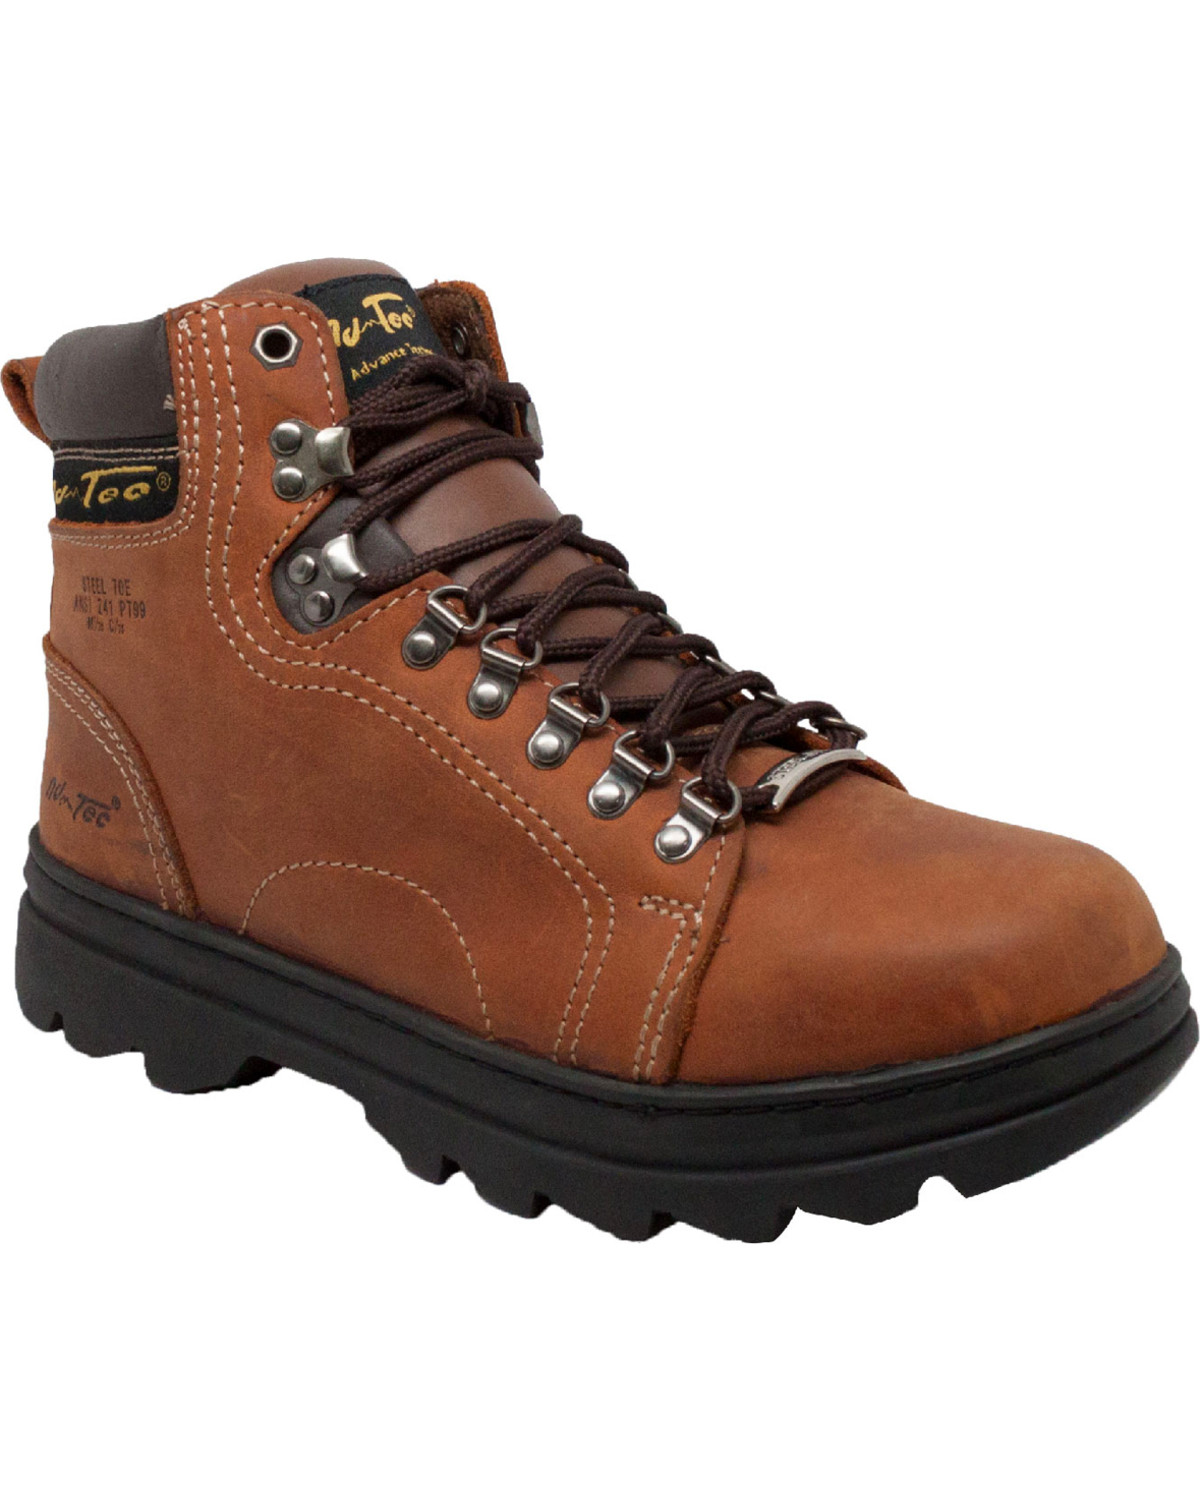 AdTec Men's 6" Leather Hiker Work Boots - Steel Toe